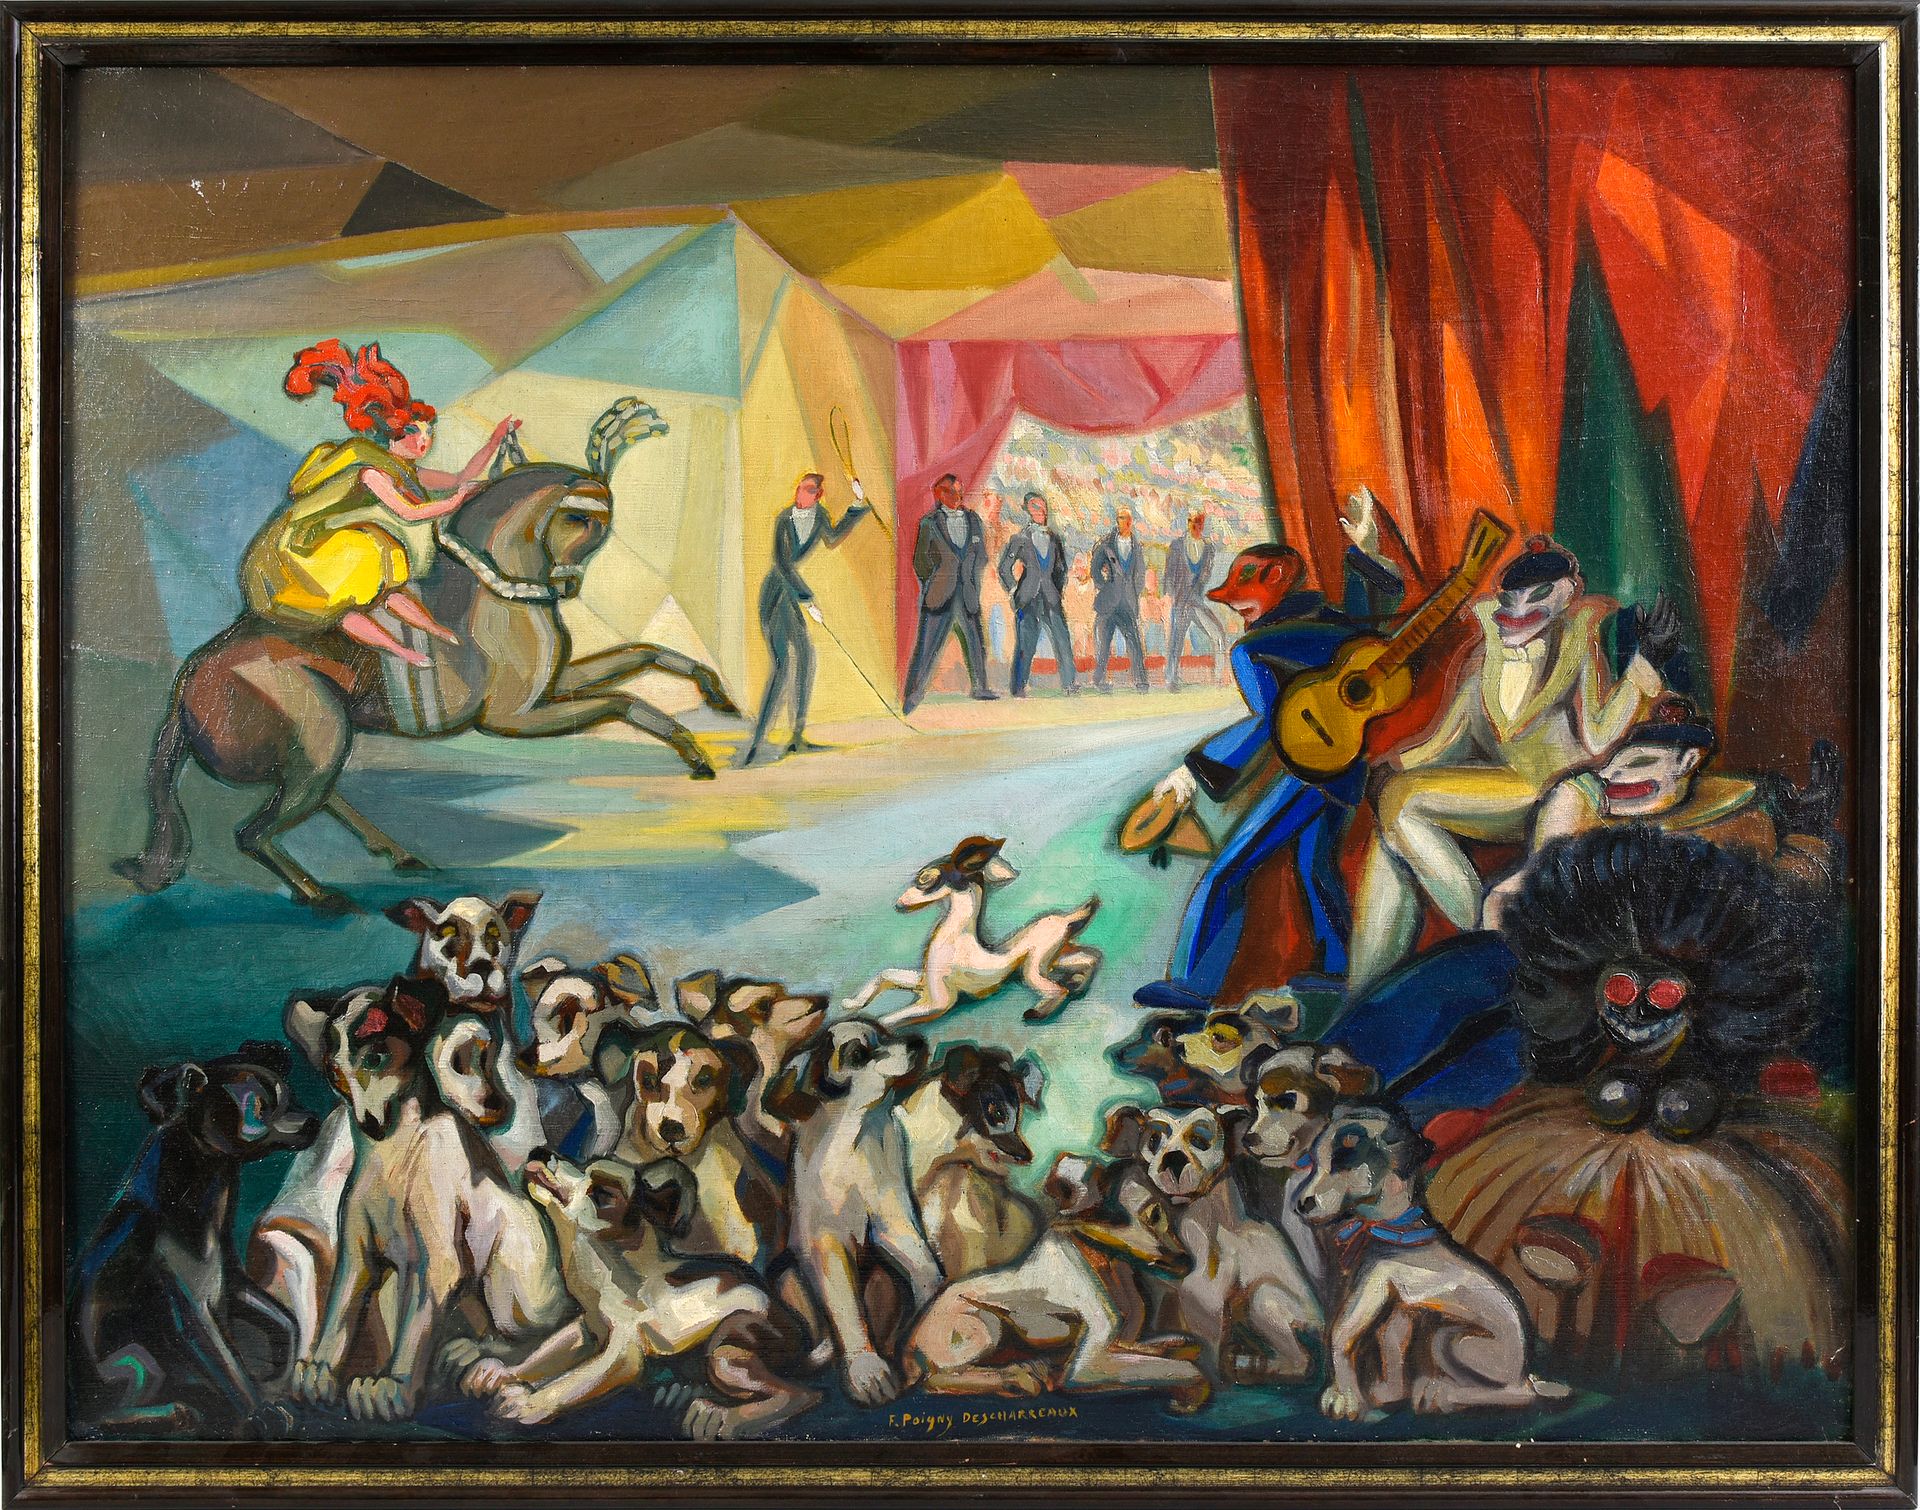 F. POIGNY DESCHARREAUX (XIXe - XXe) 
马戏团的场景。约1925/30。
一对油画，中间下部有签名。
86 x 116 cm。